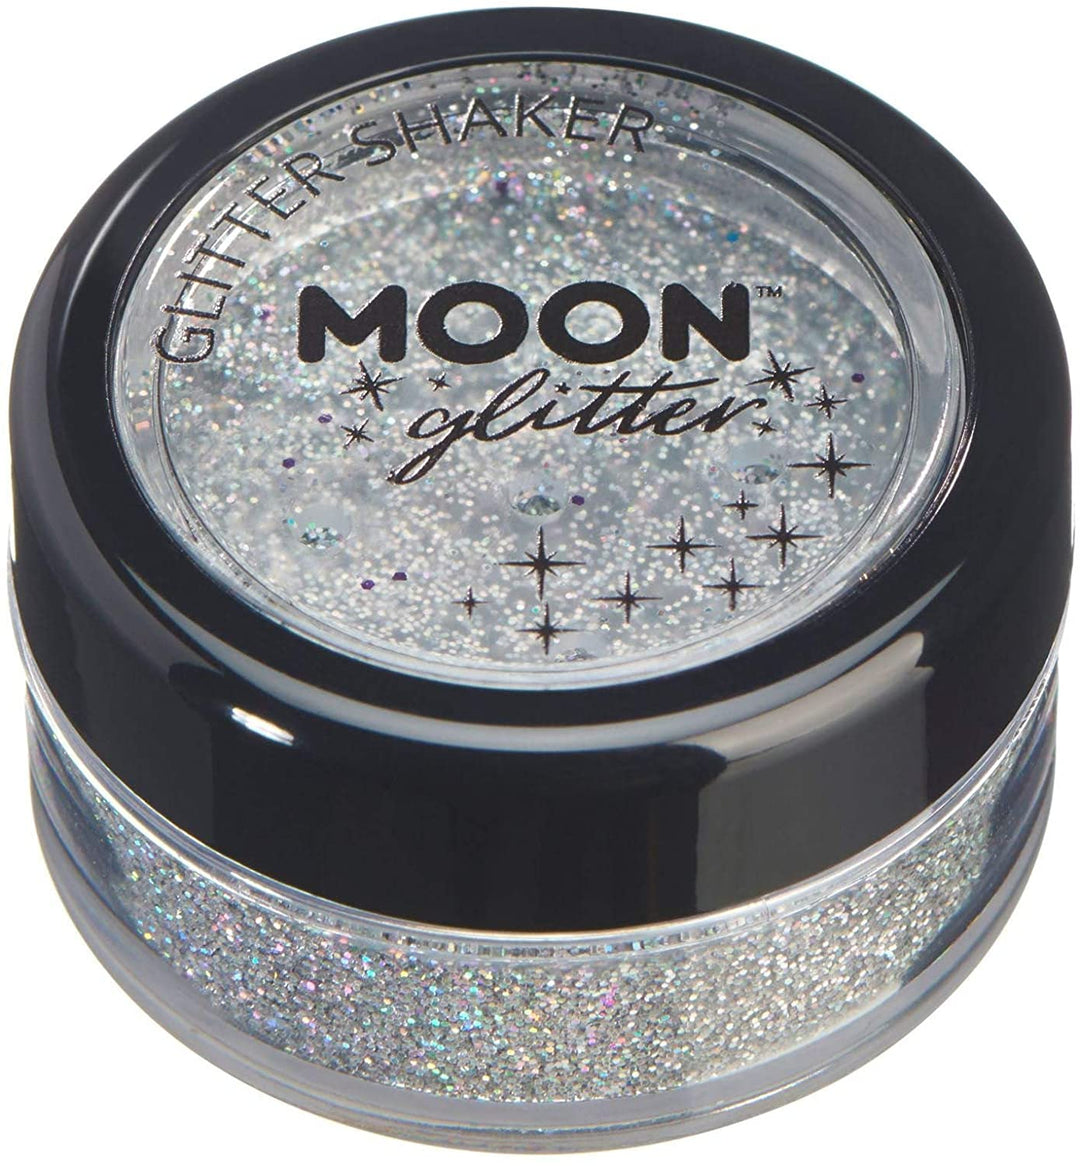 Holografische Glitzerstreuer von Moon Glitter – Silber – kosmetischer Festival-Make-up-Glitzer für Gesicht, Körper, Nägel, Haare, Lippen – 5 g